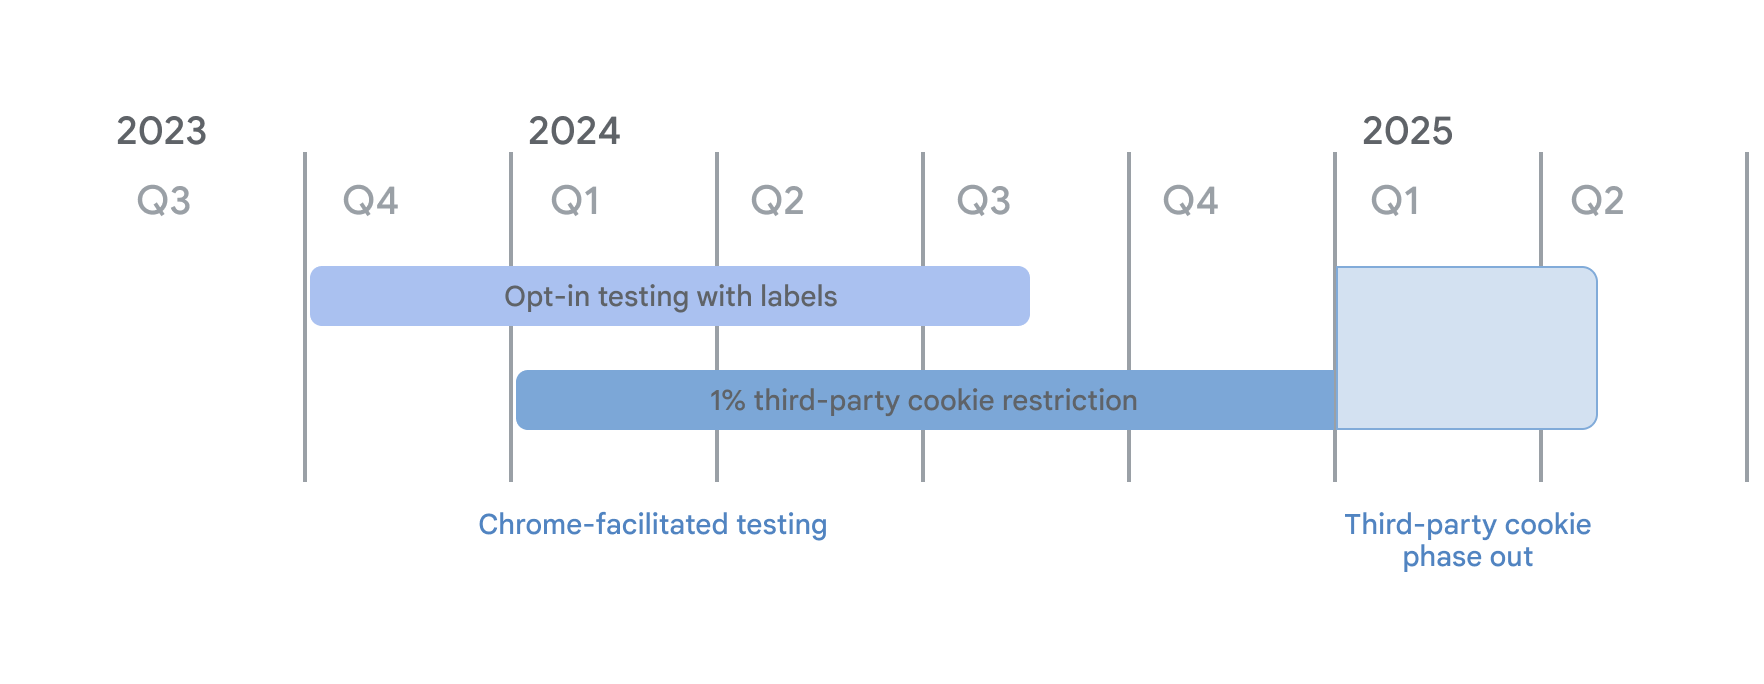 График прекращения использования сторонних файлов cookie. В рамках тестирования с помощью Chrome в четвертом квартале 2023 года началось добровольное тестирование с режимом меток, а с 4 января 2024 года — ограничение в размере 1% для 3 компьютеров. Оба варианта продолжатся до первого квартала 2025 года, когда начнется поэтапный отказ от сторонних файлов cookie.